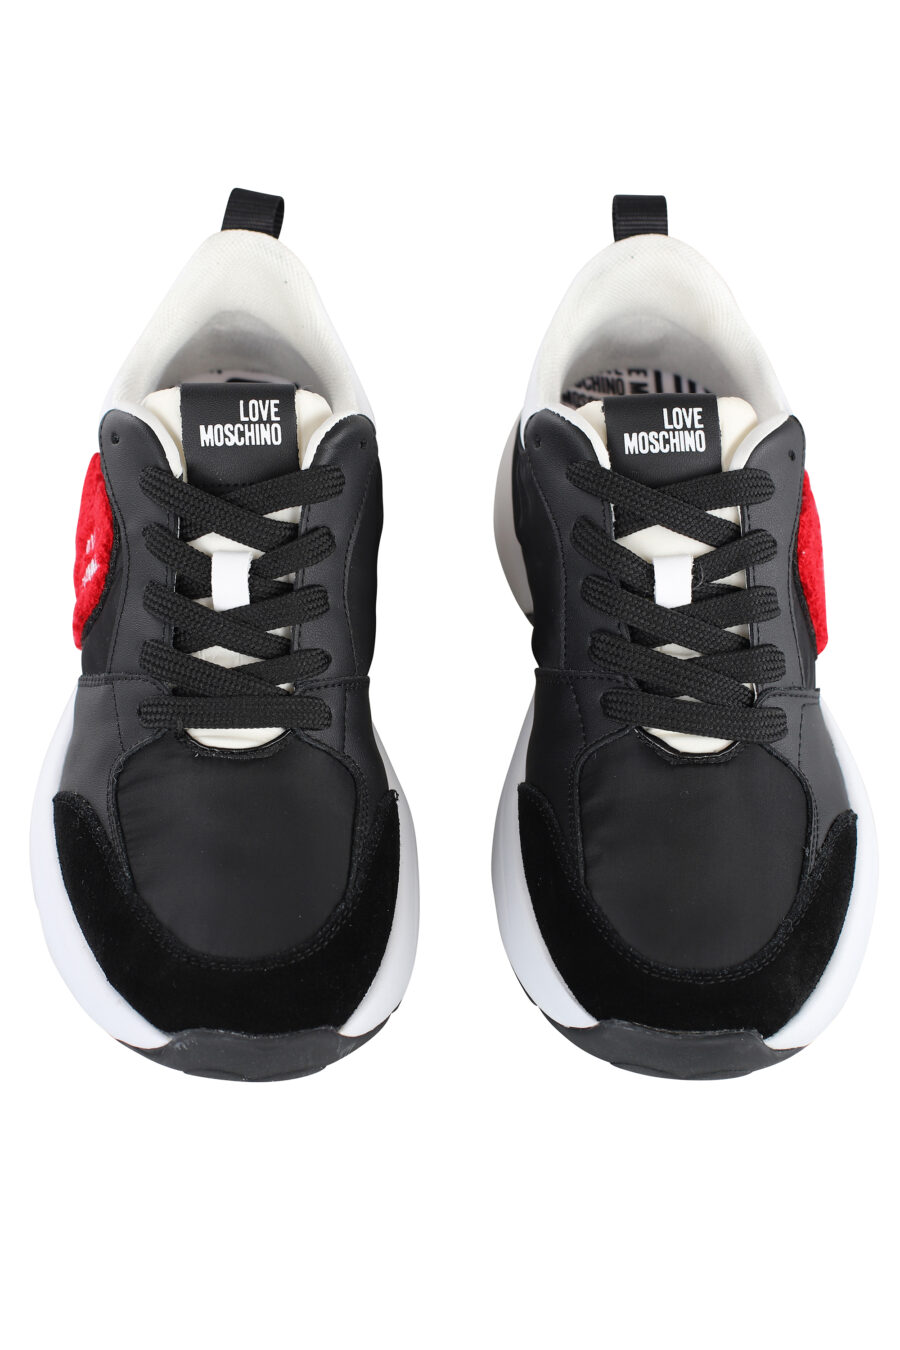 Zapatillas negras "sporty" con detalles blancos y corazón rojo bordado - IMG 7092